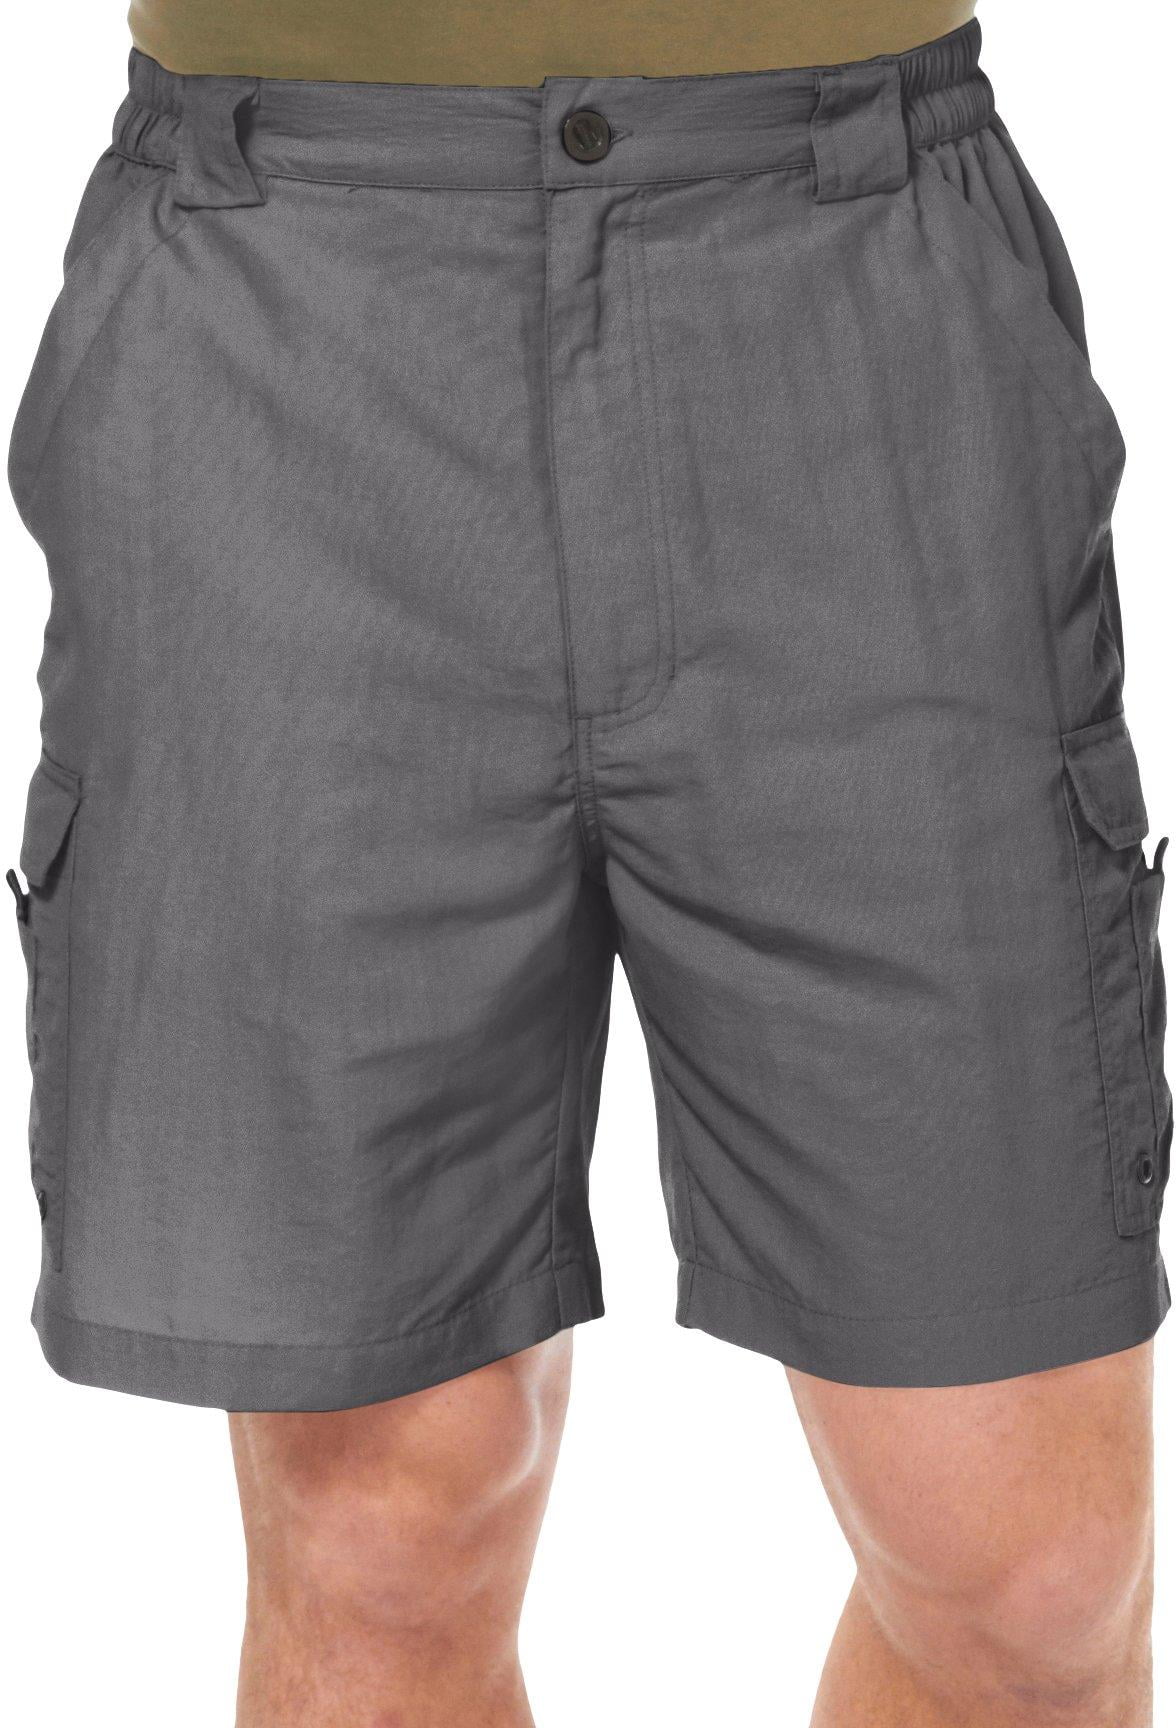 Reel Legends Mens Bonefish Shorts - Walmart.com